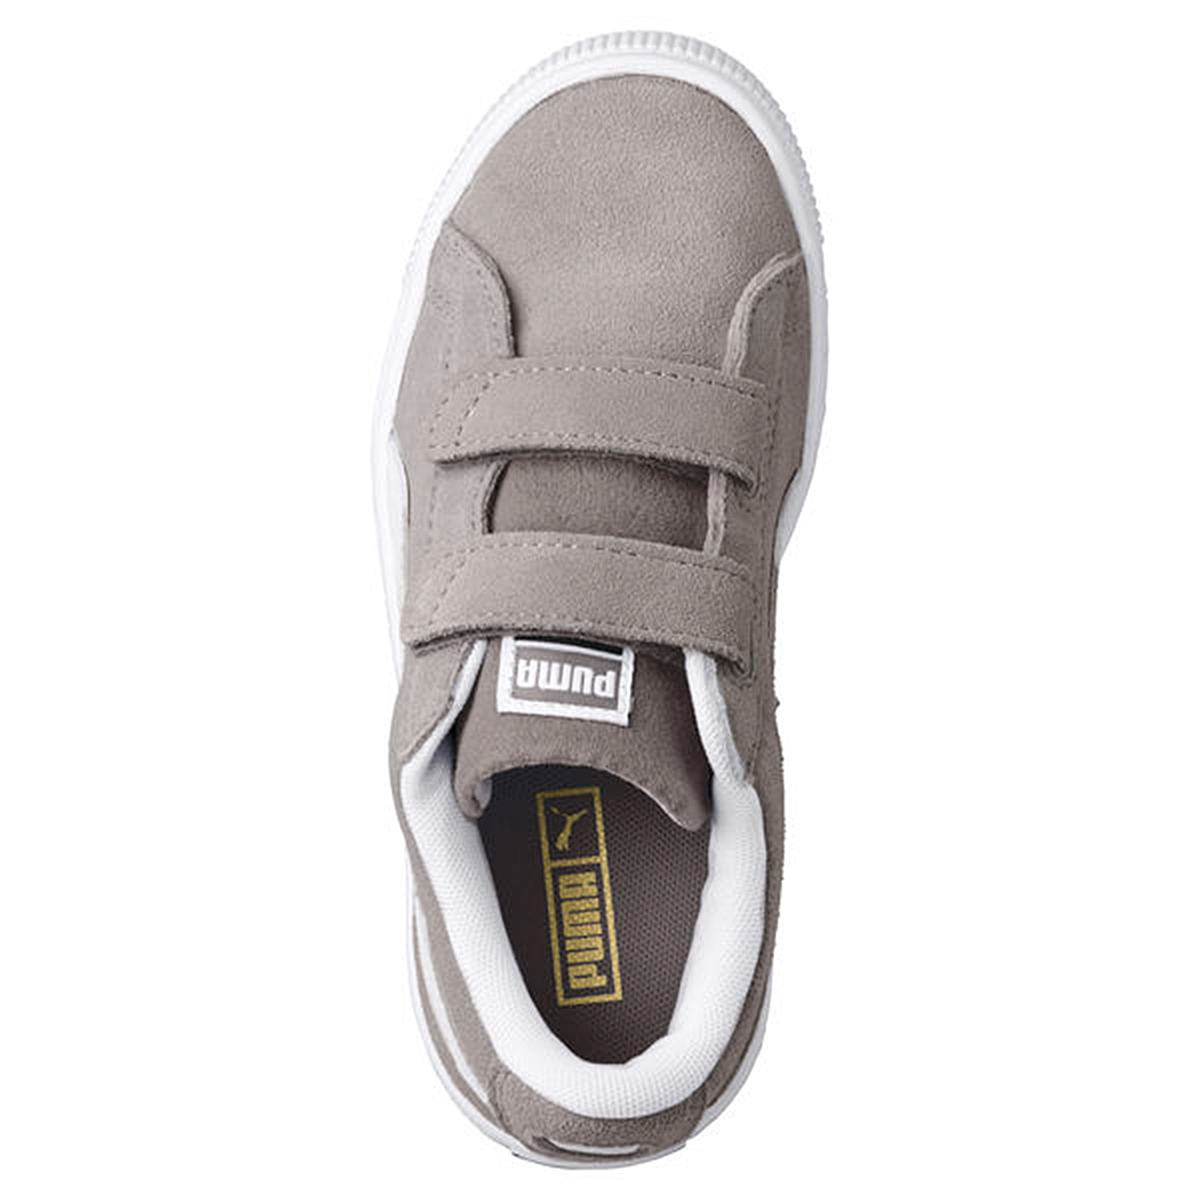 Puma Suede Classic V Inf Kinder Sneaker Schuhe 365077 14 grau